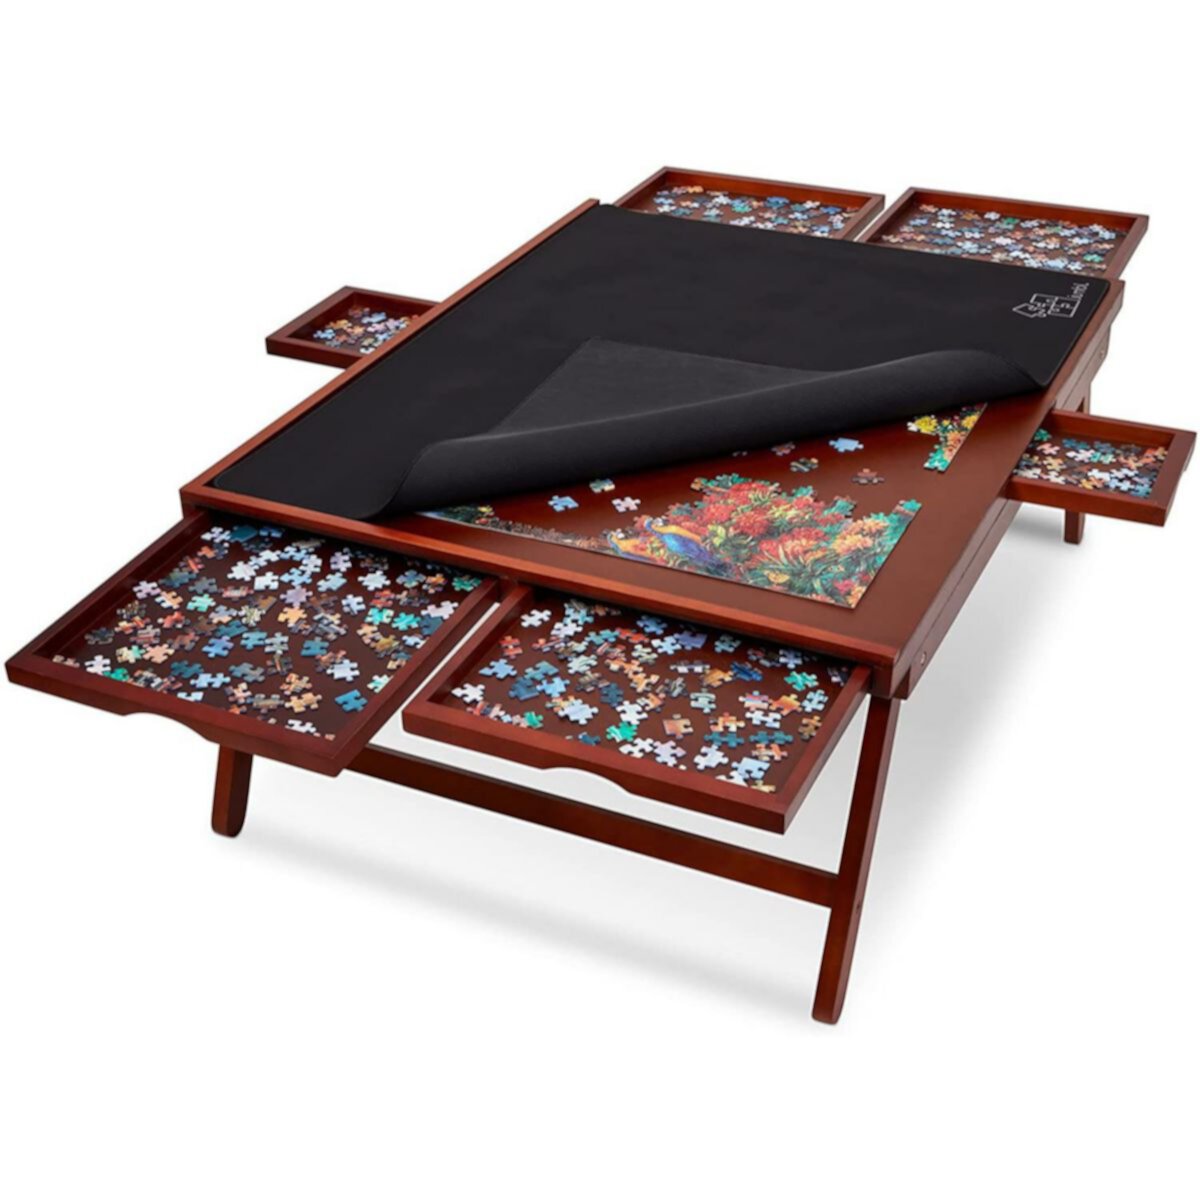 Стойка для досок-пазлов на 1500 предметов с ковриком, деревянный стол-пазл размером 27 x 35 дюймов Jumbl